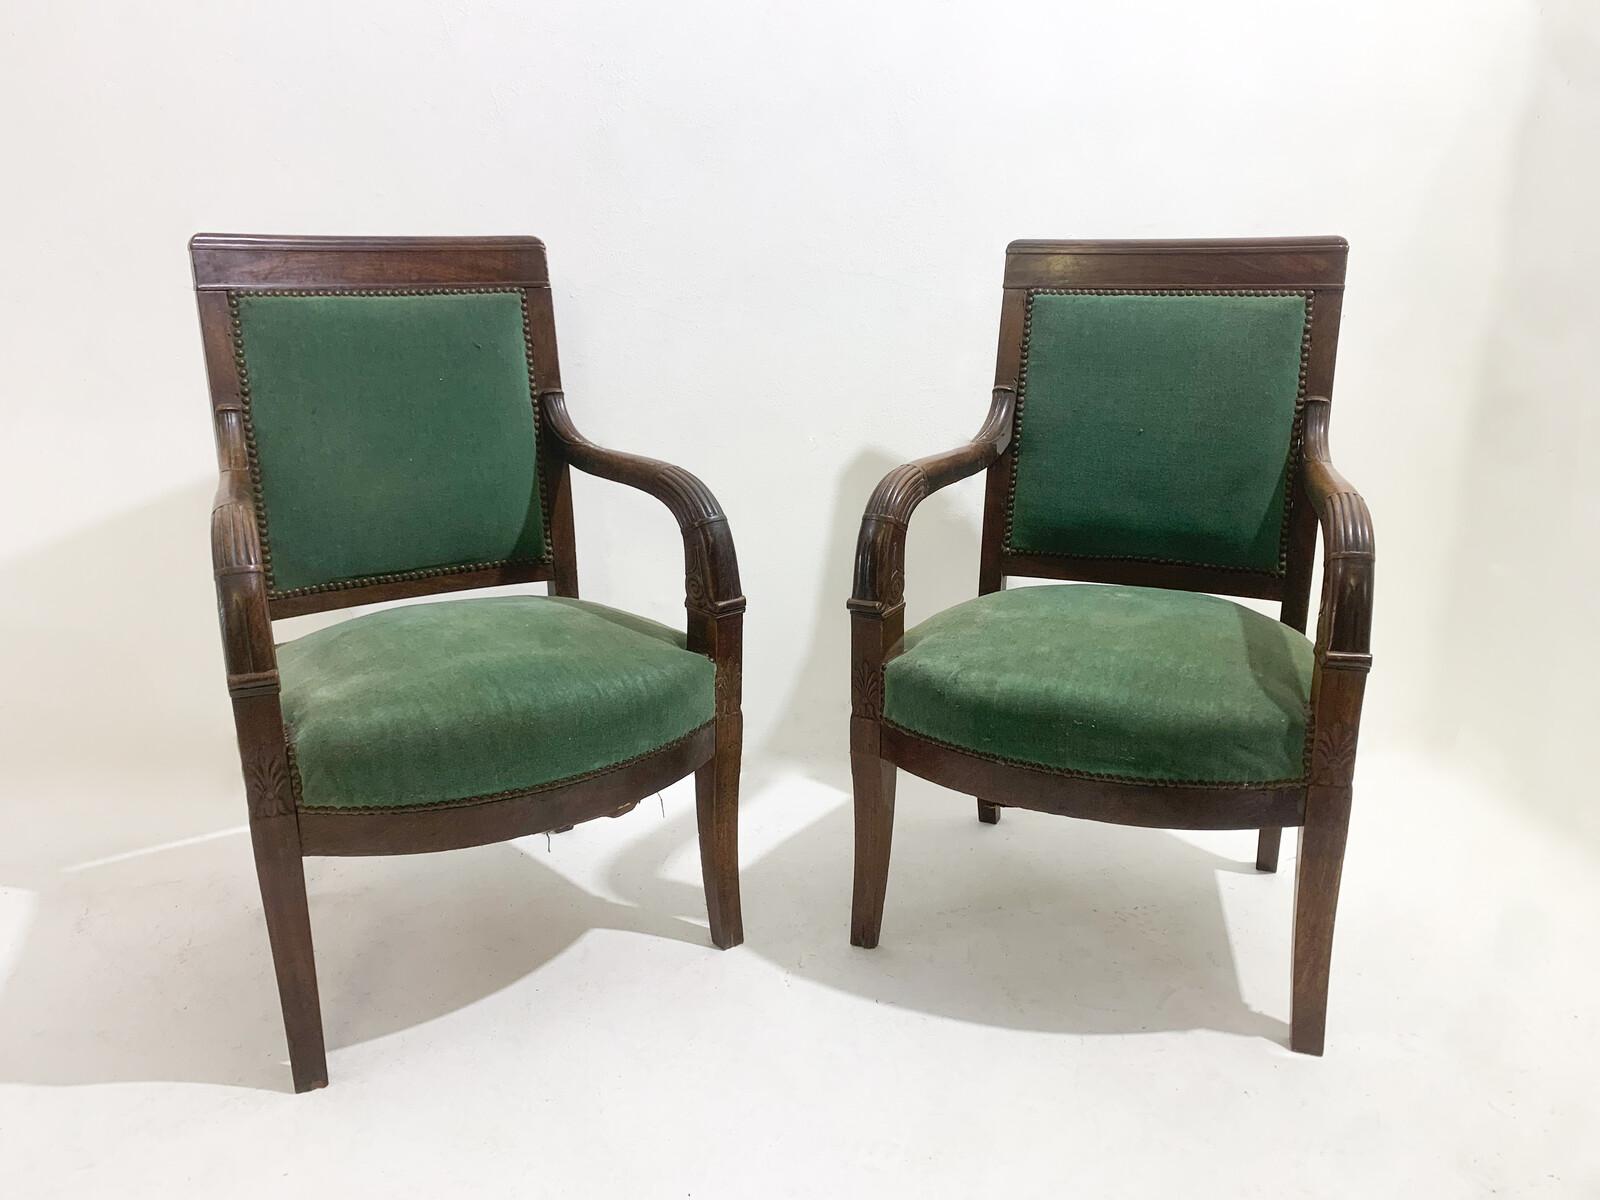 Pair of green armchairs, empire, mahogany, 19th century.